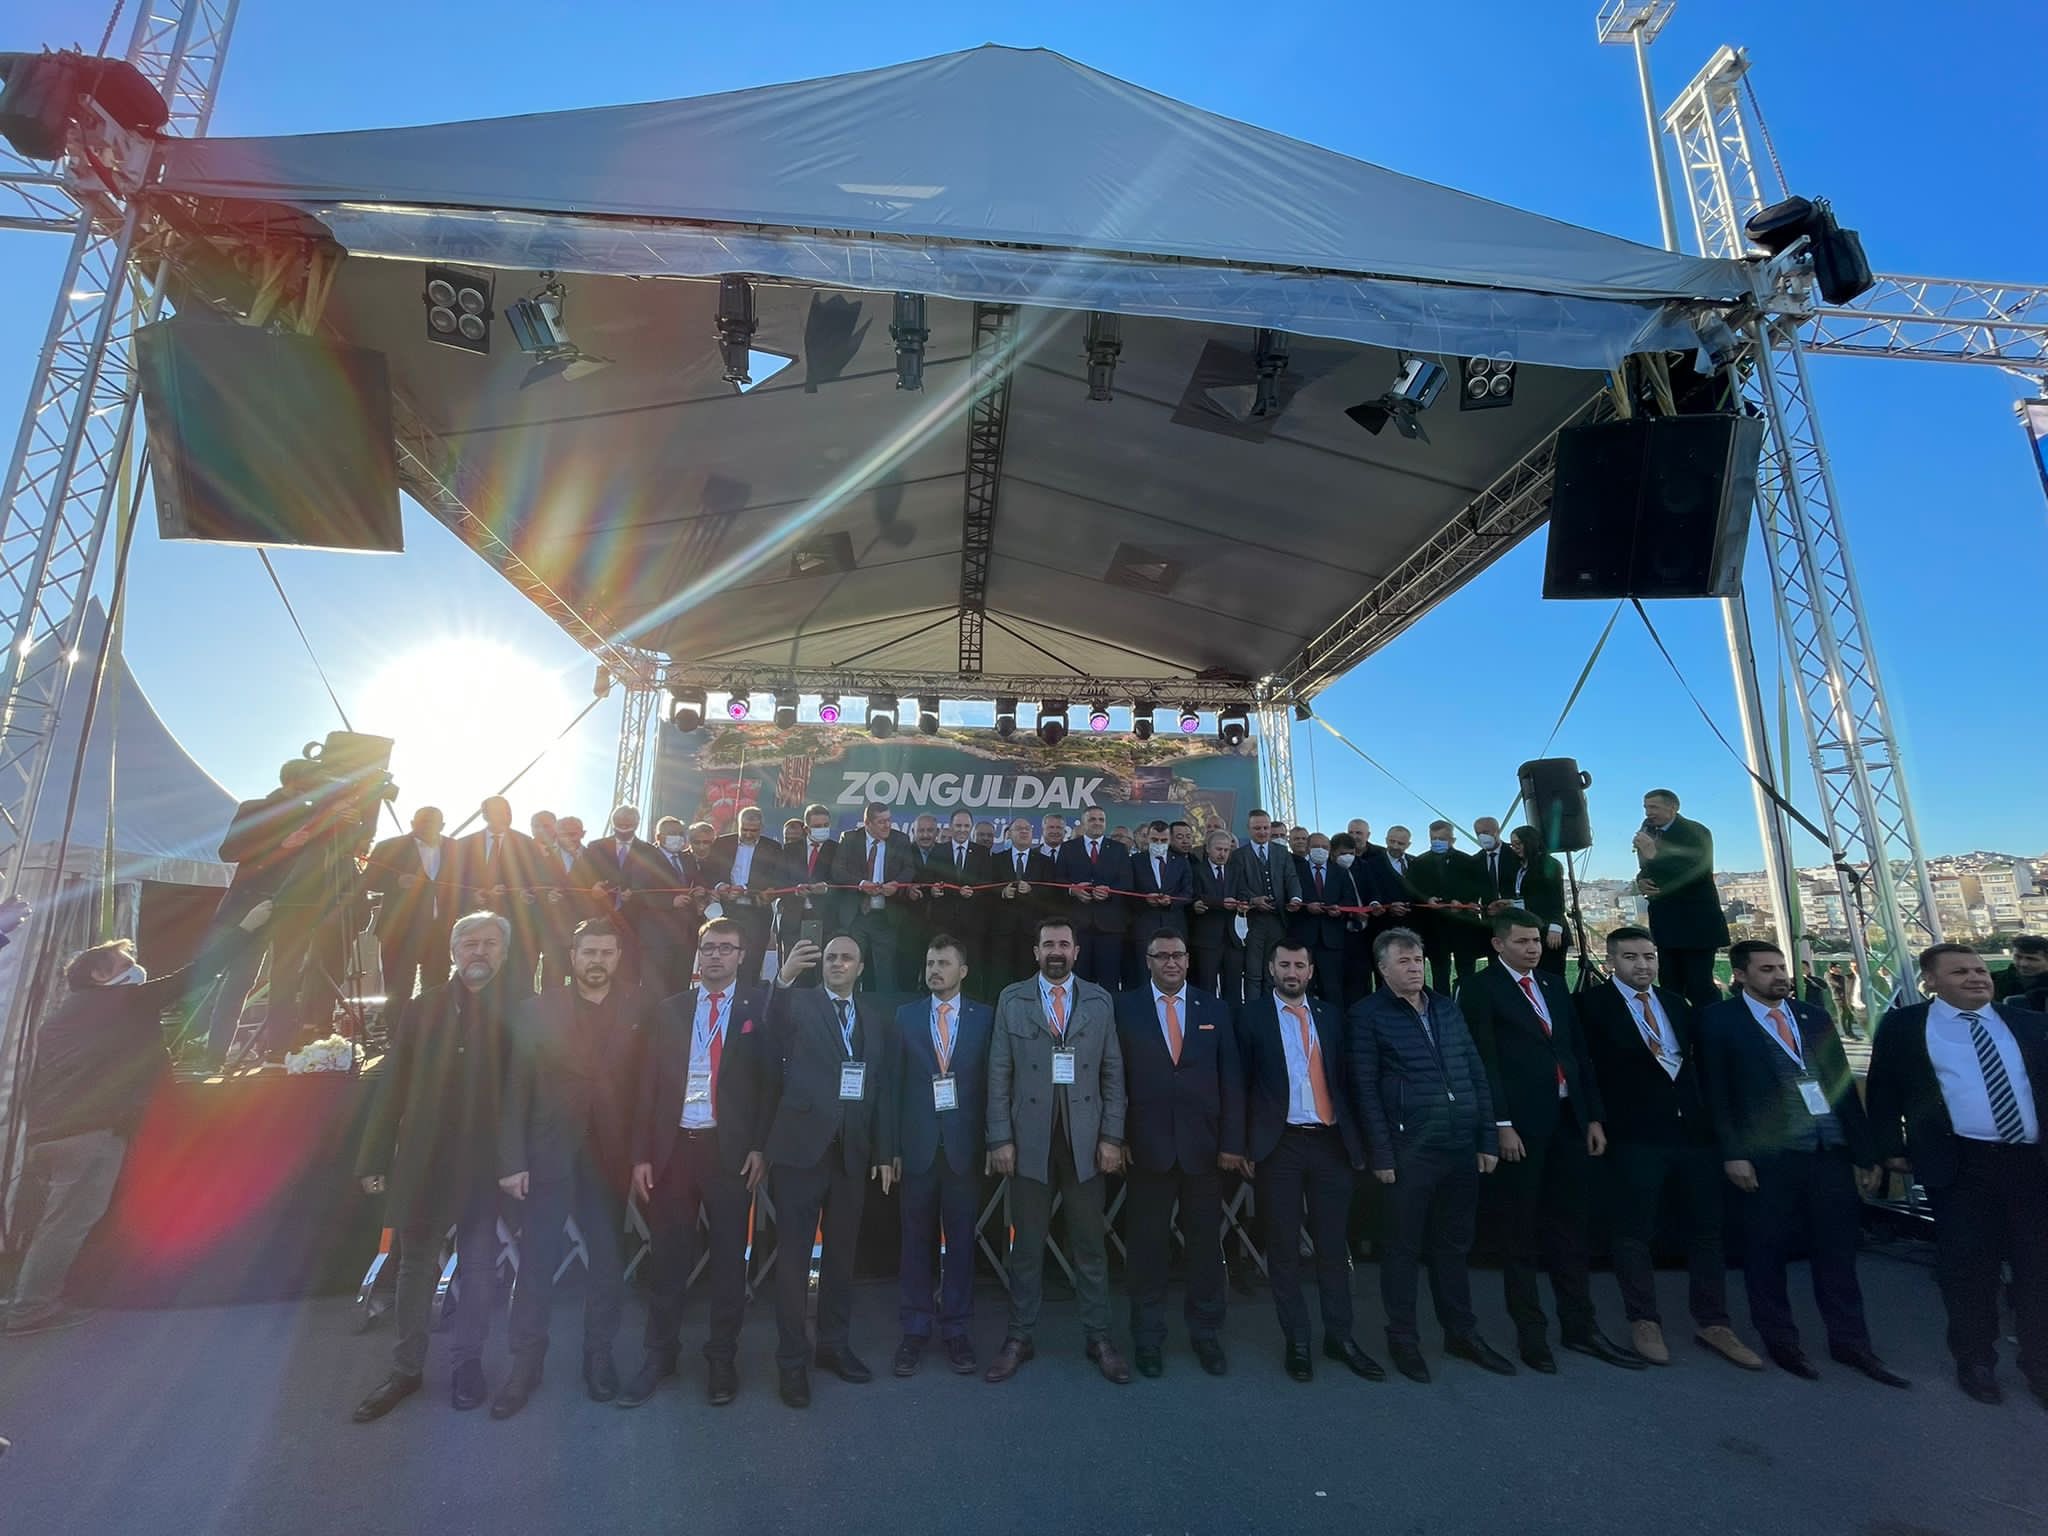 İl Başkanımız İsa Mesih Şahin, il ve ilçe teşkilat mensuplarımız ile birlikte Zonguldak Tanıtım Günleri'ne katıldı